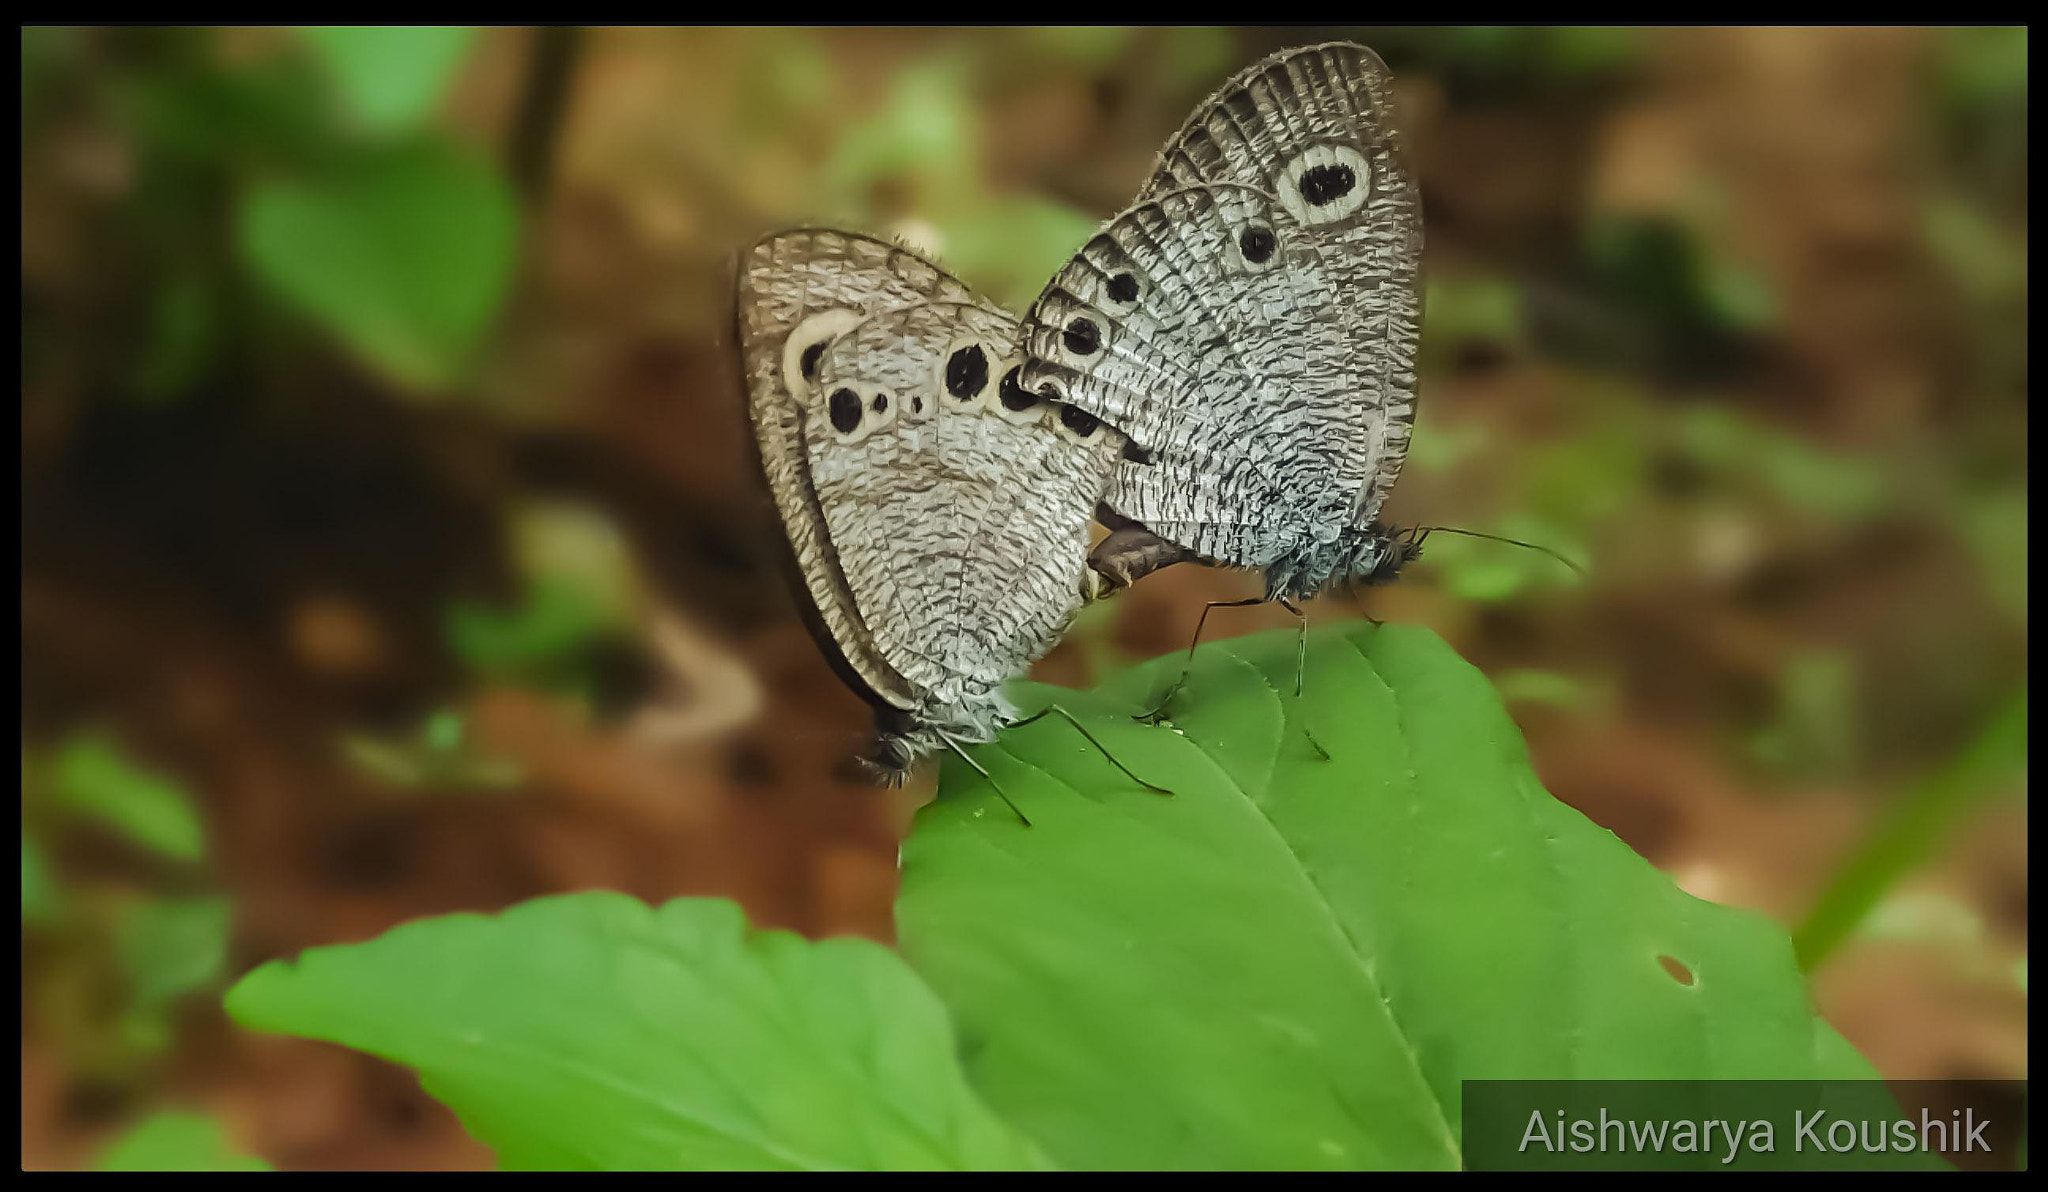 ASUS ZenFone 2 Laser (ZE550KL) sample photo. Butterflies mating photography